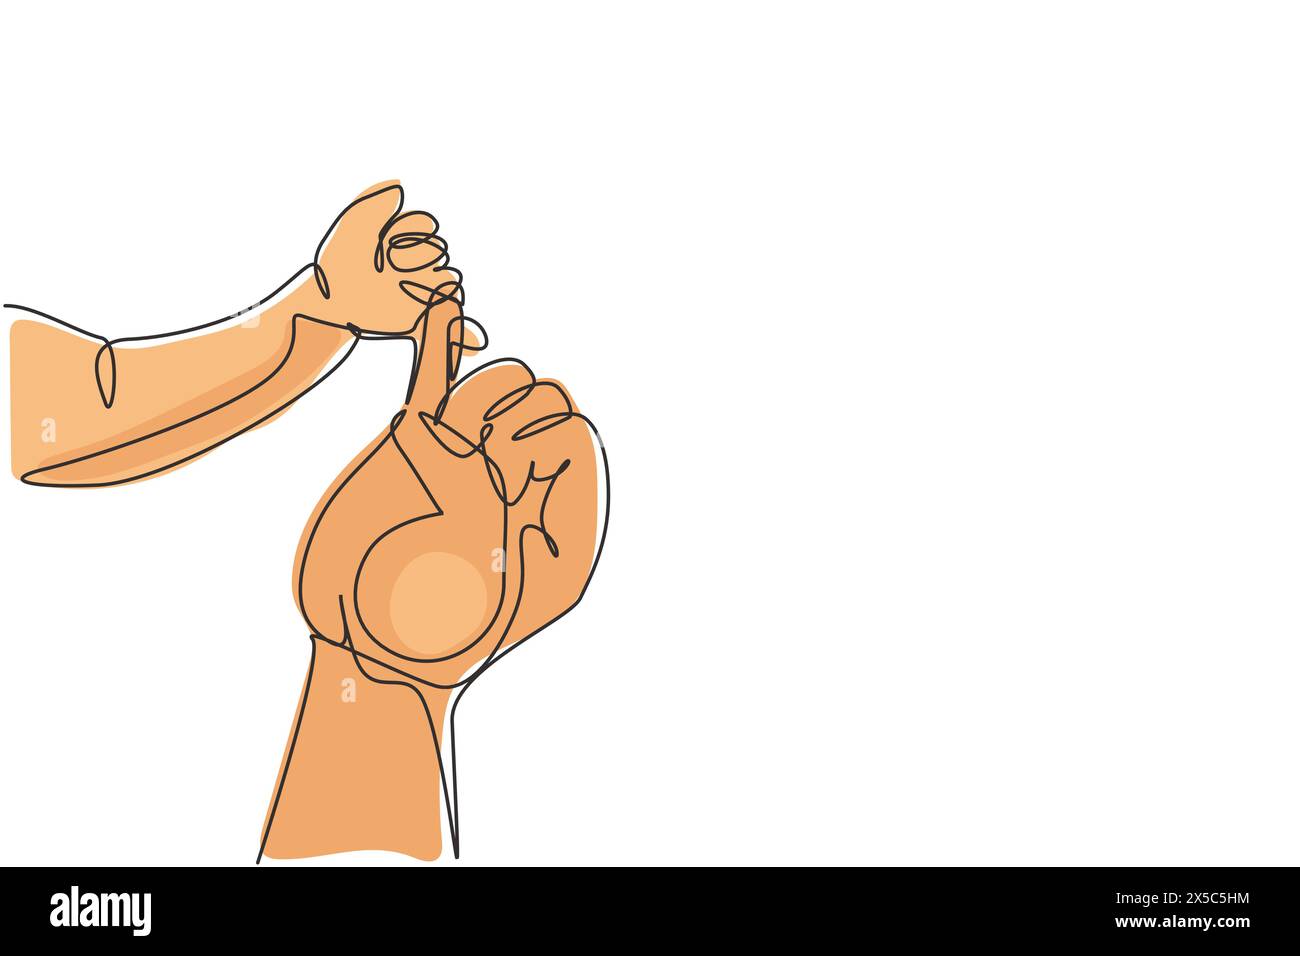 Linea singola continua che disegna le mani del genitore tenendo le dita del neonato. Chiudi la mano della madre che tiene in mano il loro neonato. Il concetto del giorno della madre. Acceso Illustrazione Vettoriale